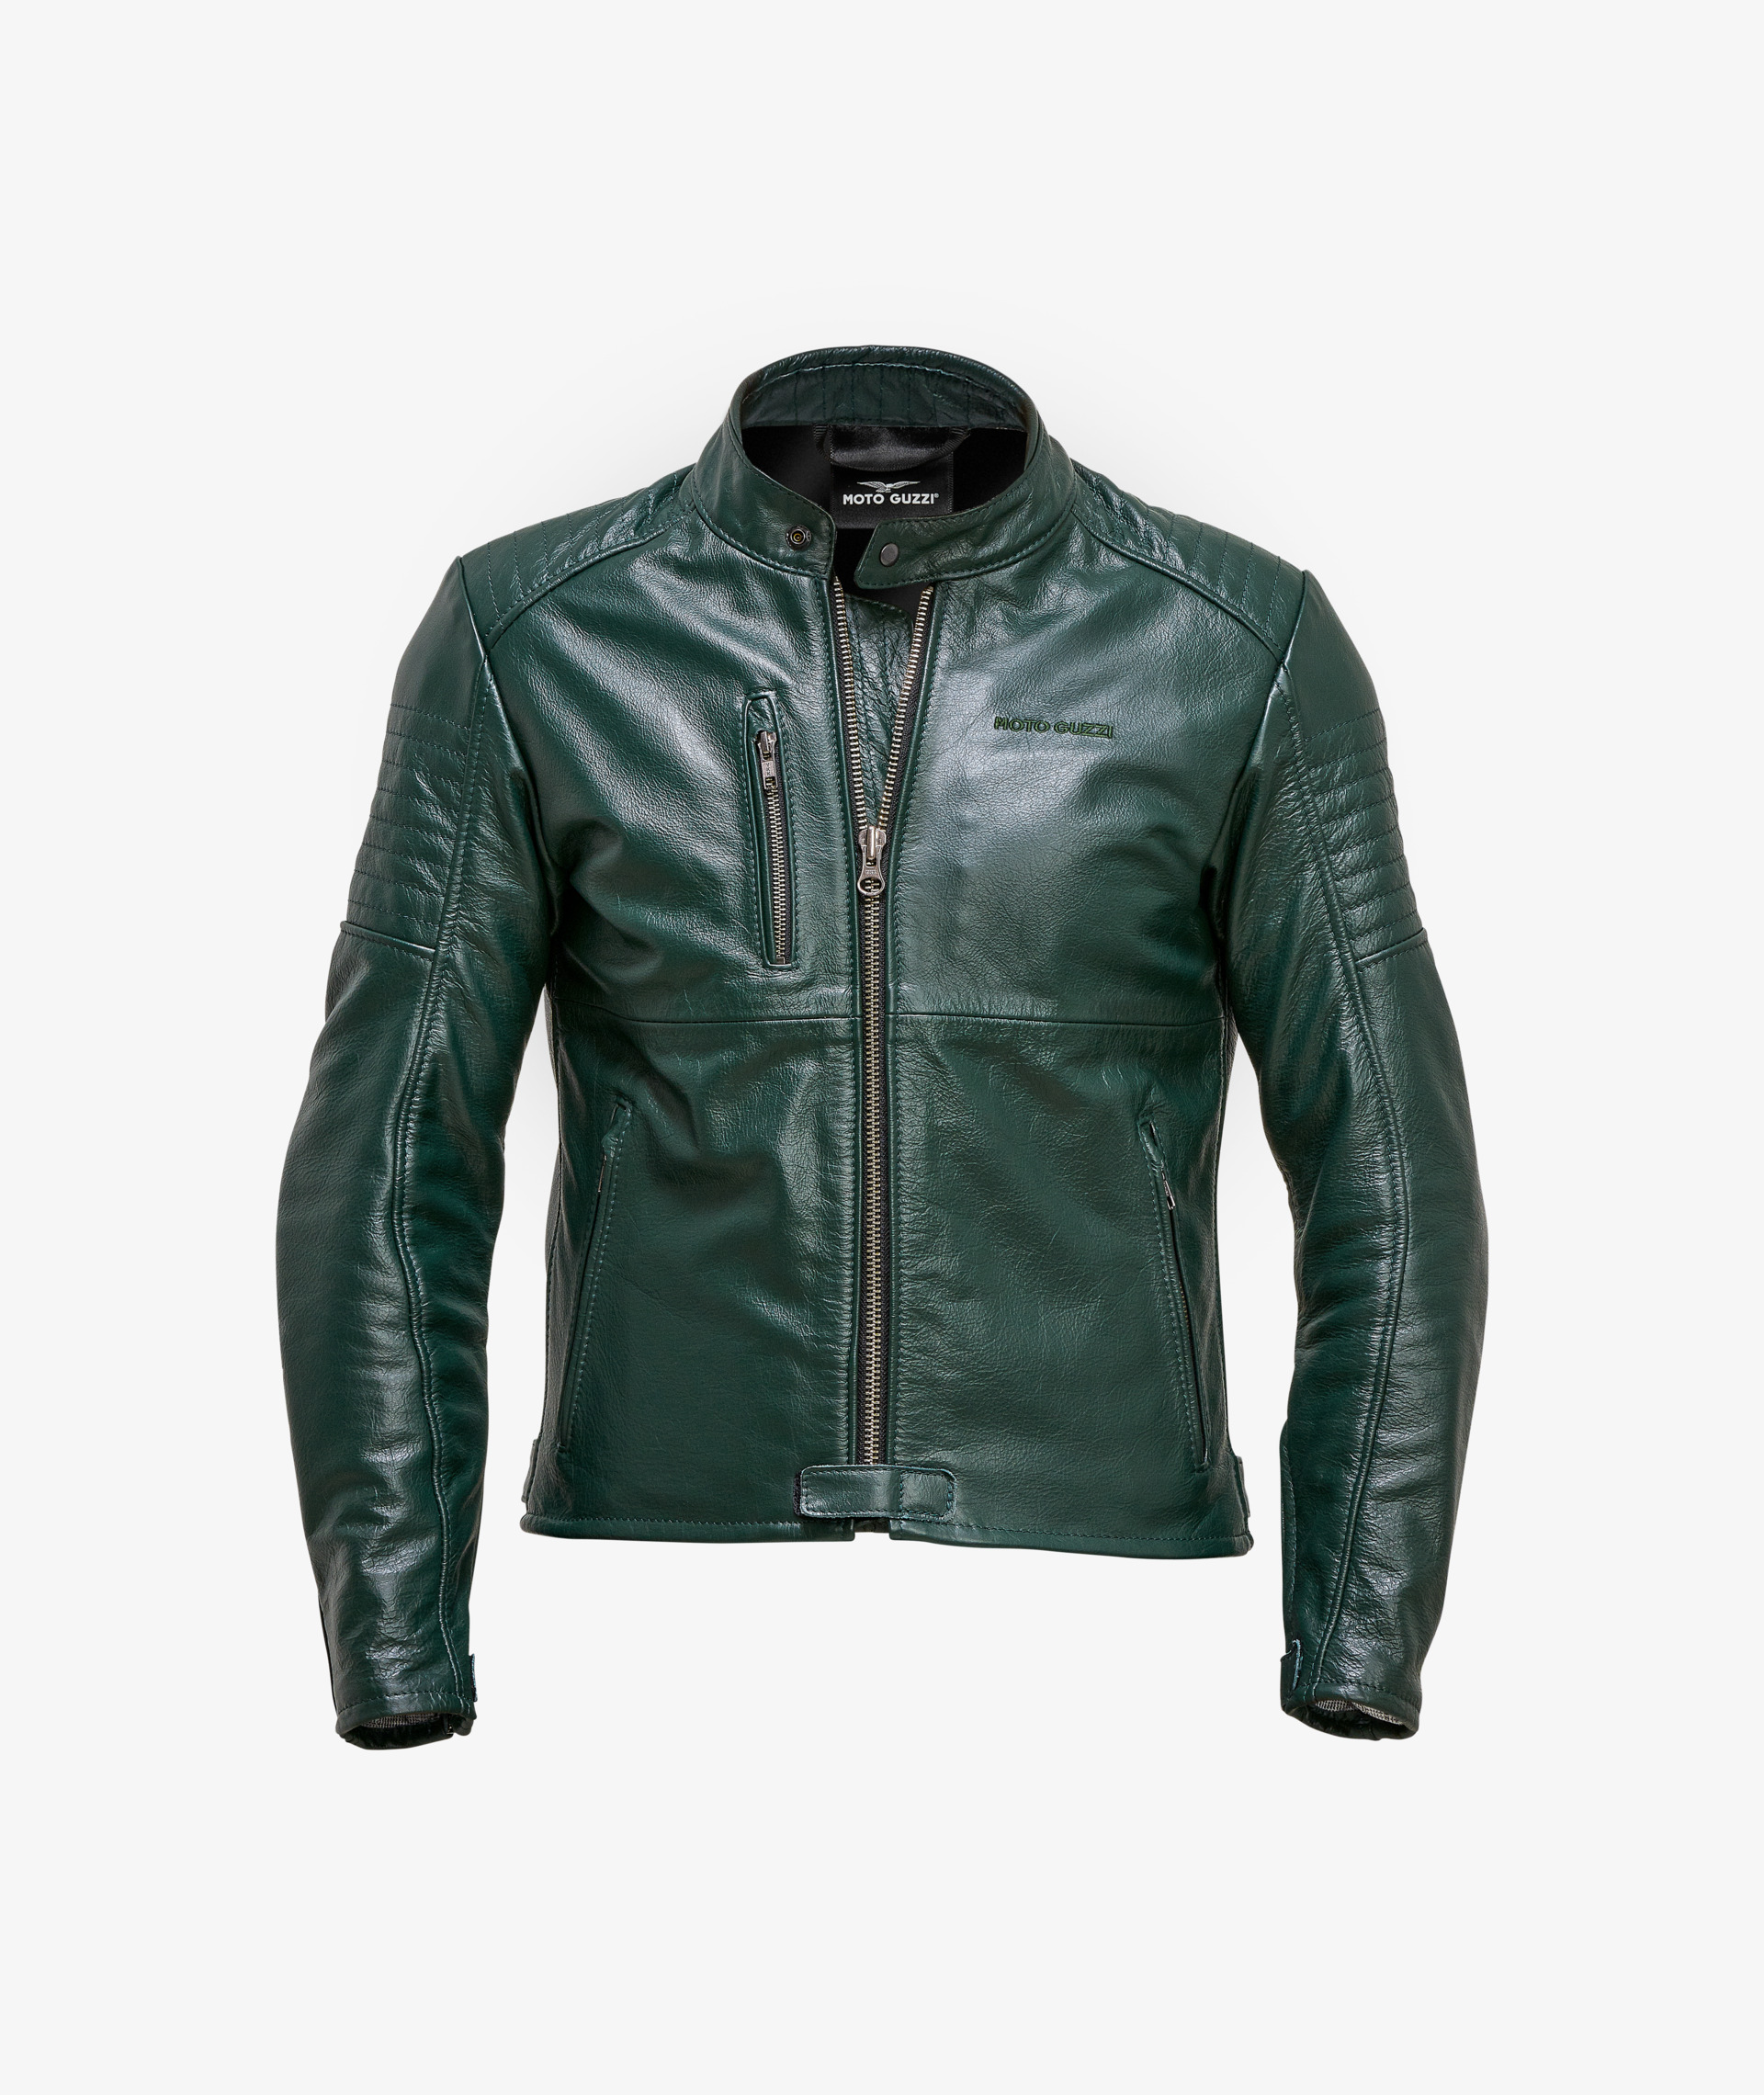 Collezione abbigliamento uomo giacca, giacca protezione moto